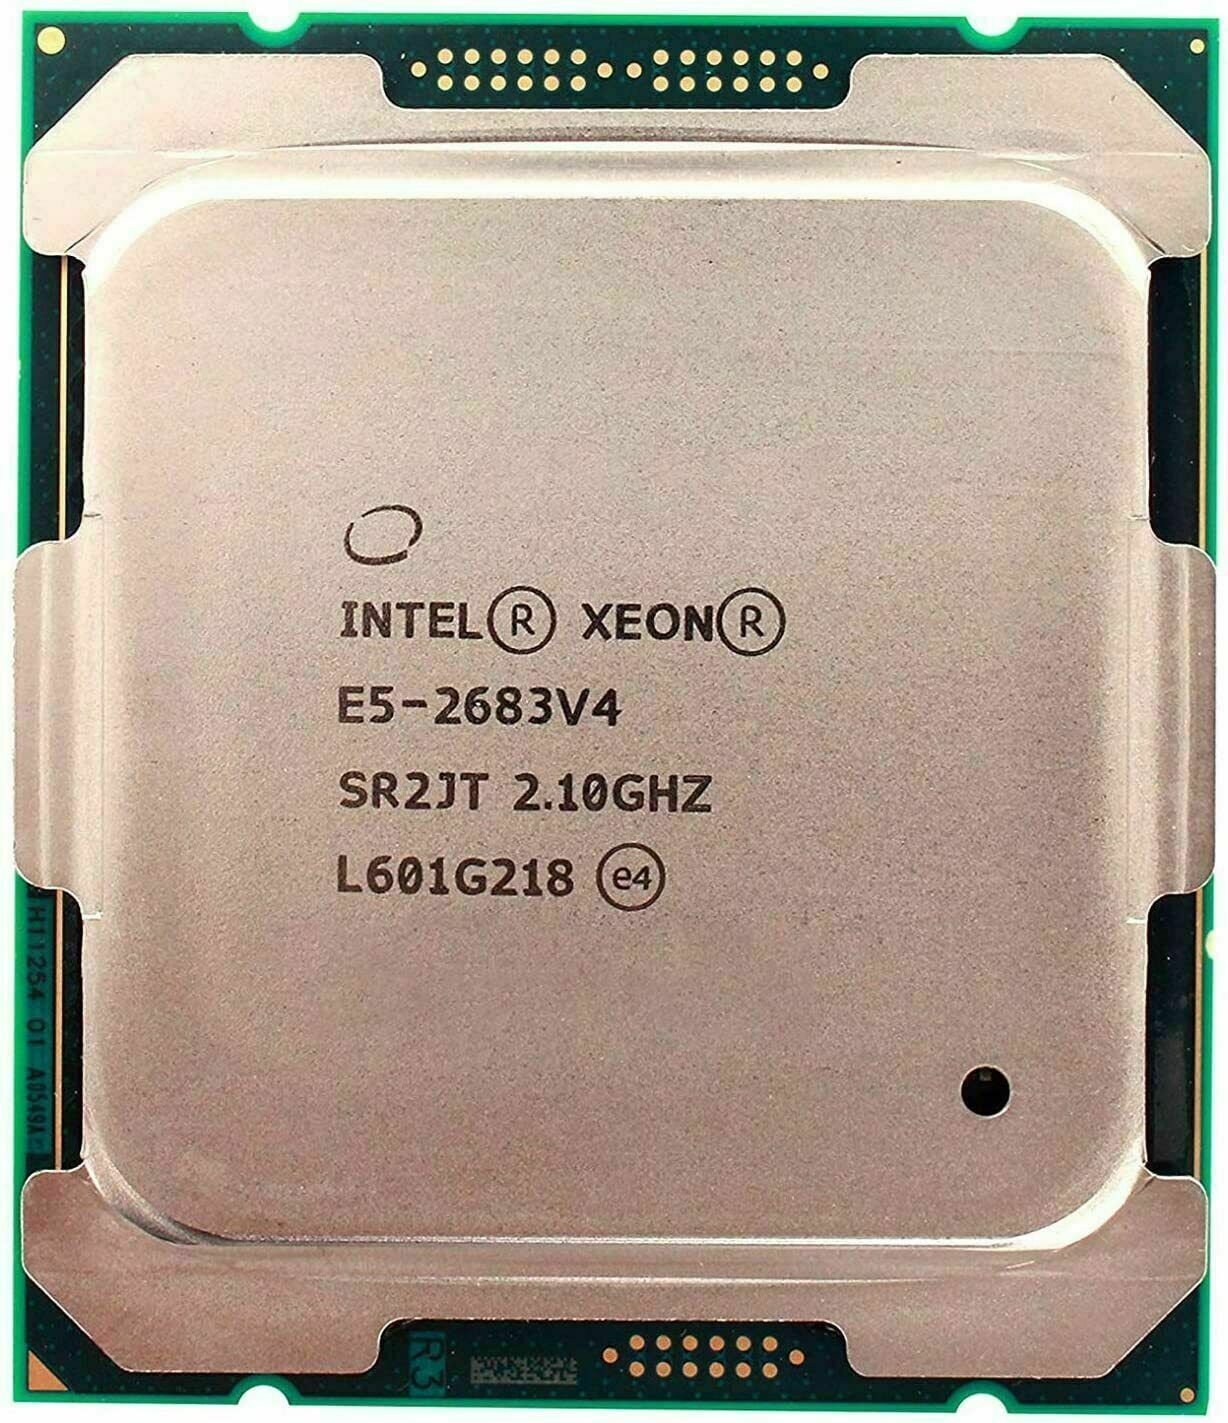 Intel Xeon E5-2683 V4 2.10GHz 16CORE 40M SR2JT LGA2011-3 CPU Processor